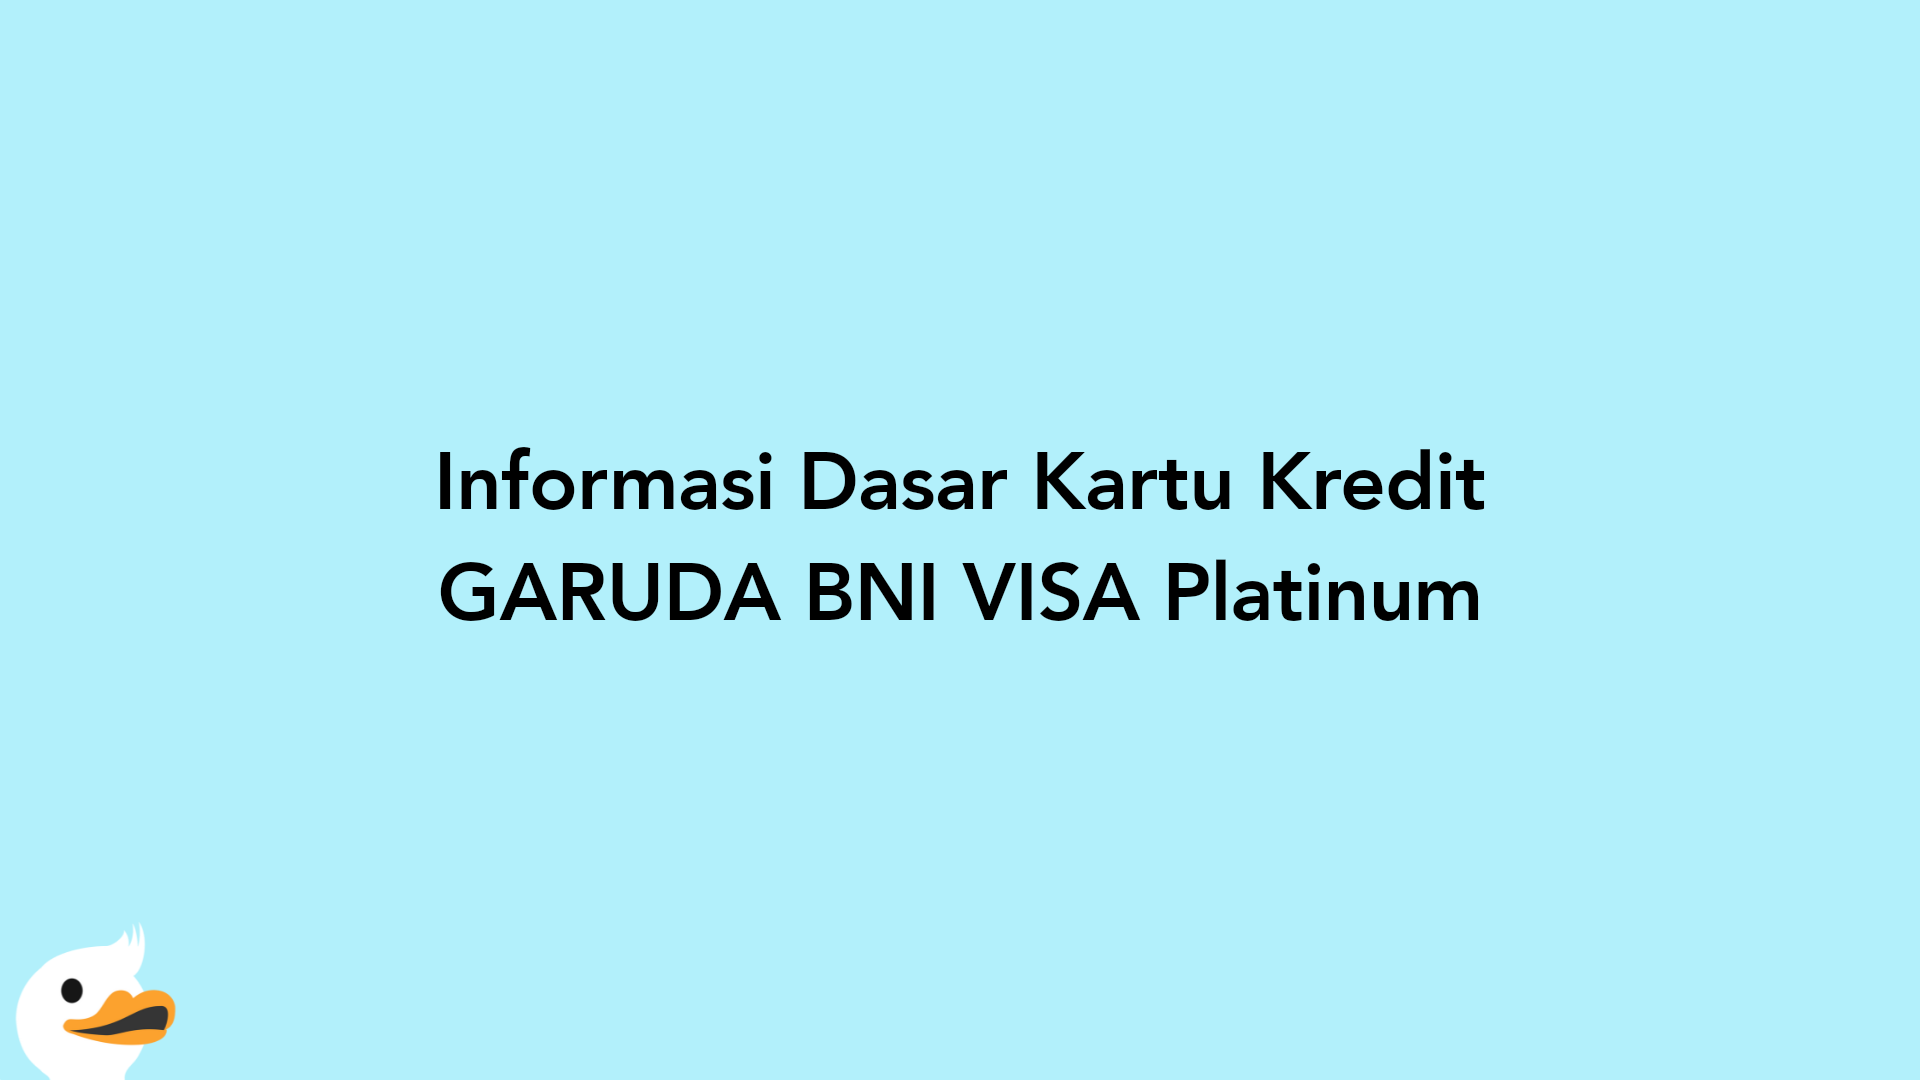 Informasi Dasar Kartu Kredit GARUDA BNI VISA Platinum